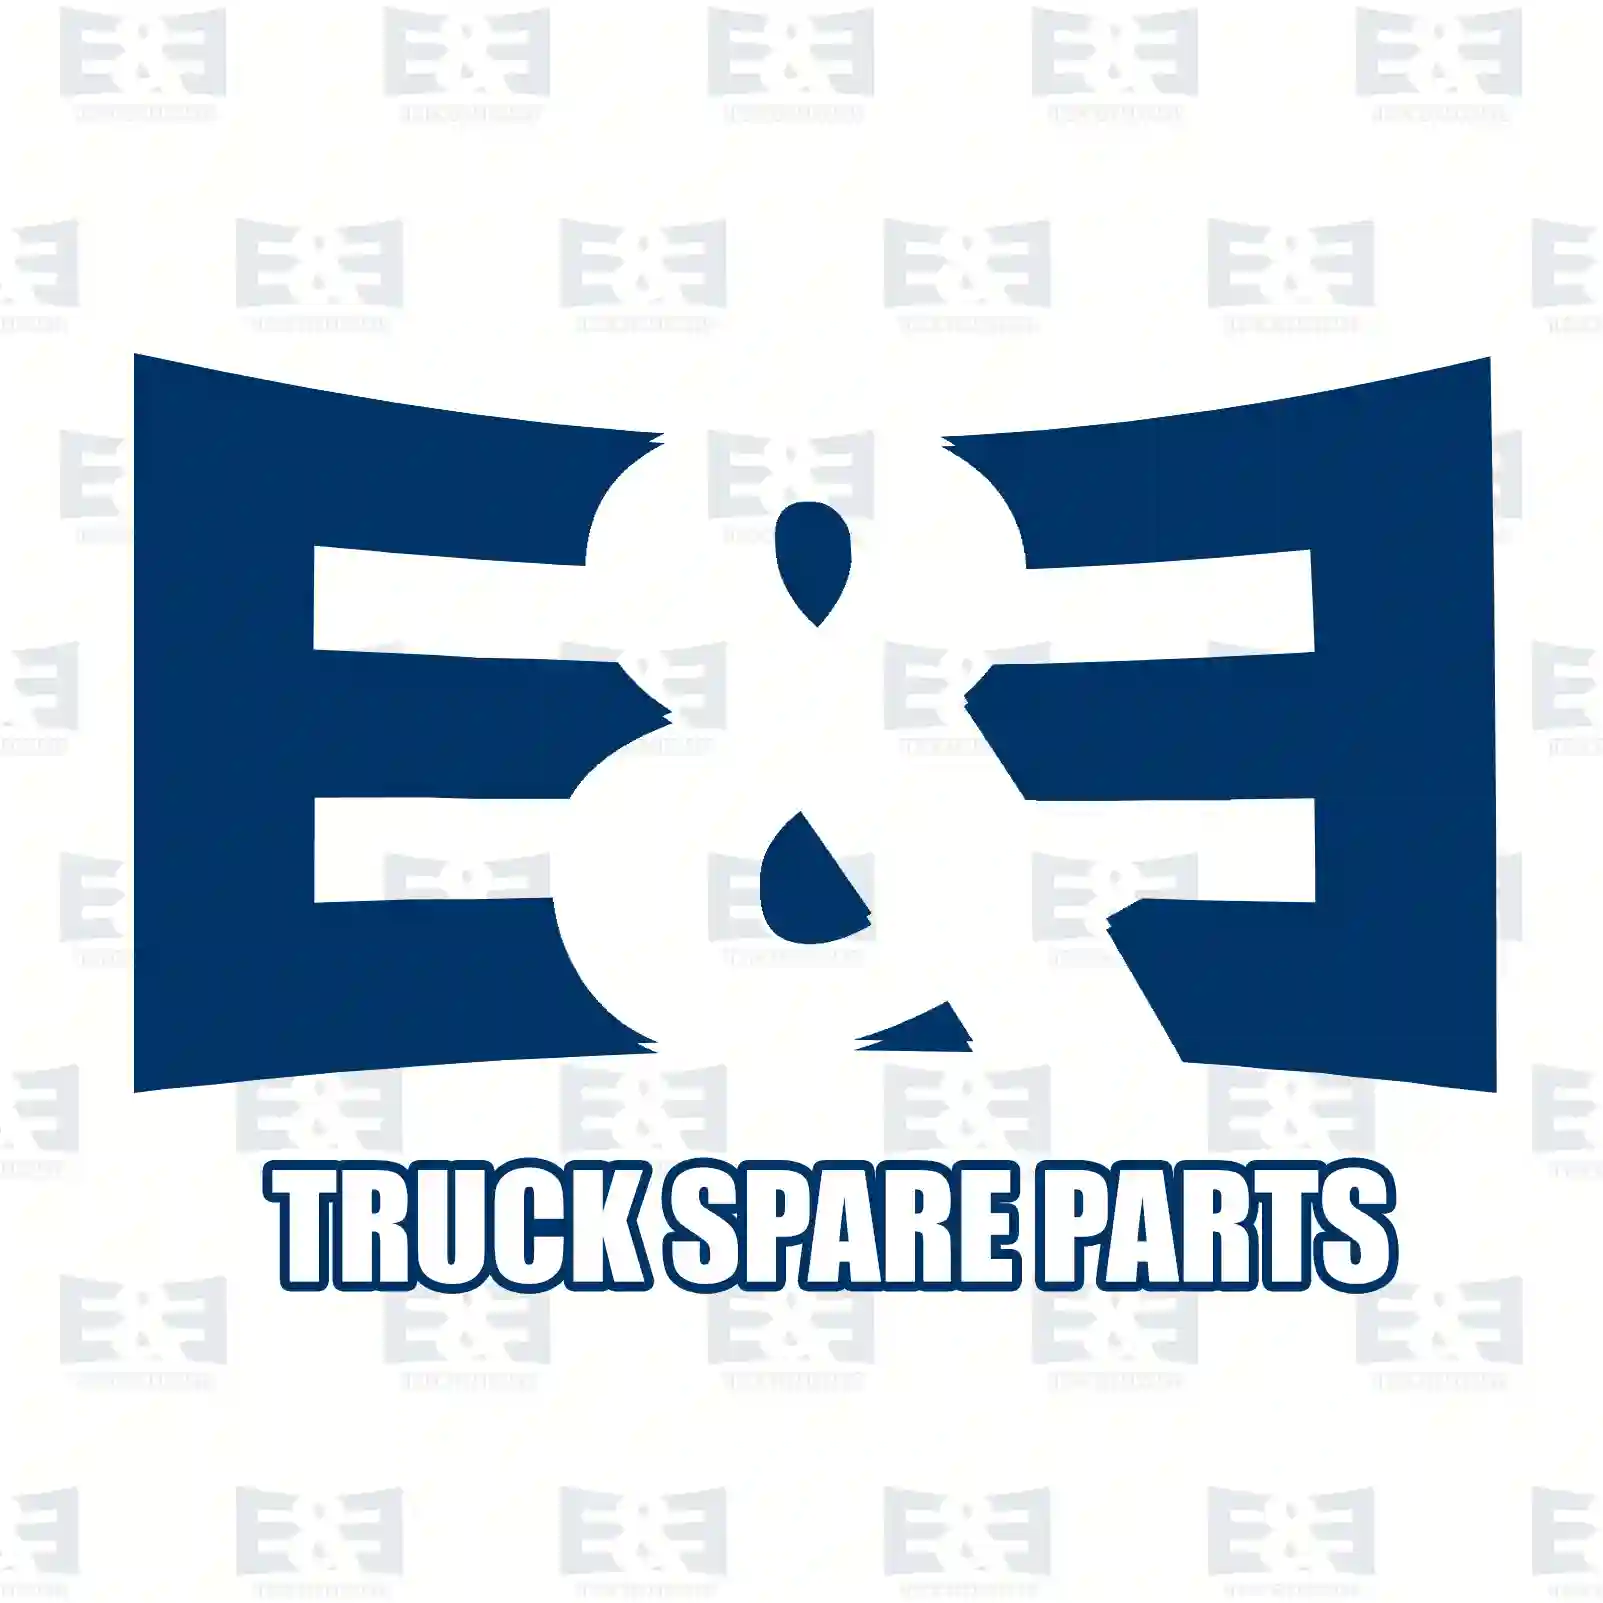 Screw with nut, 2E2285993, 000960018145S, , , ||  2E2285993 E&E Truck Spare Parts | Truck Spare Parts, Auotomotive Spare Parts Screw with nut, 2E2285993, 000960018145S, , , ||  2E2285993 E&E Truck Spare Parts | Truck Spare Parts, Auotomotive Spare Parts